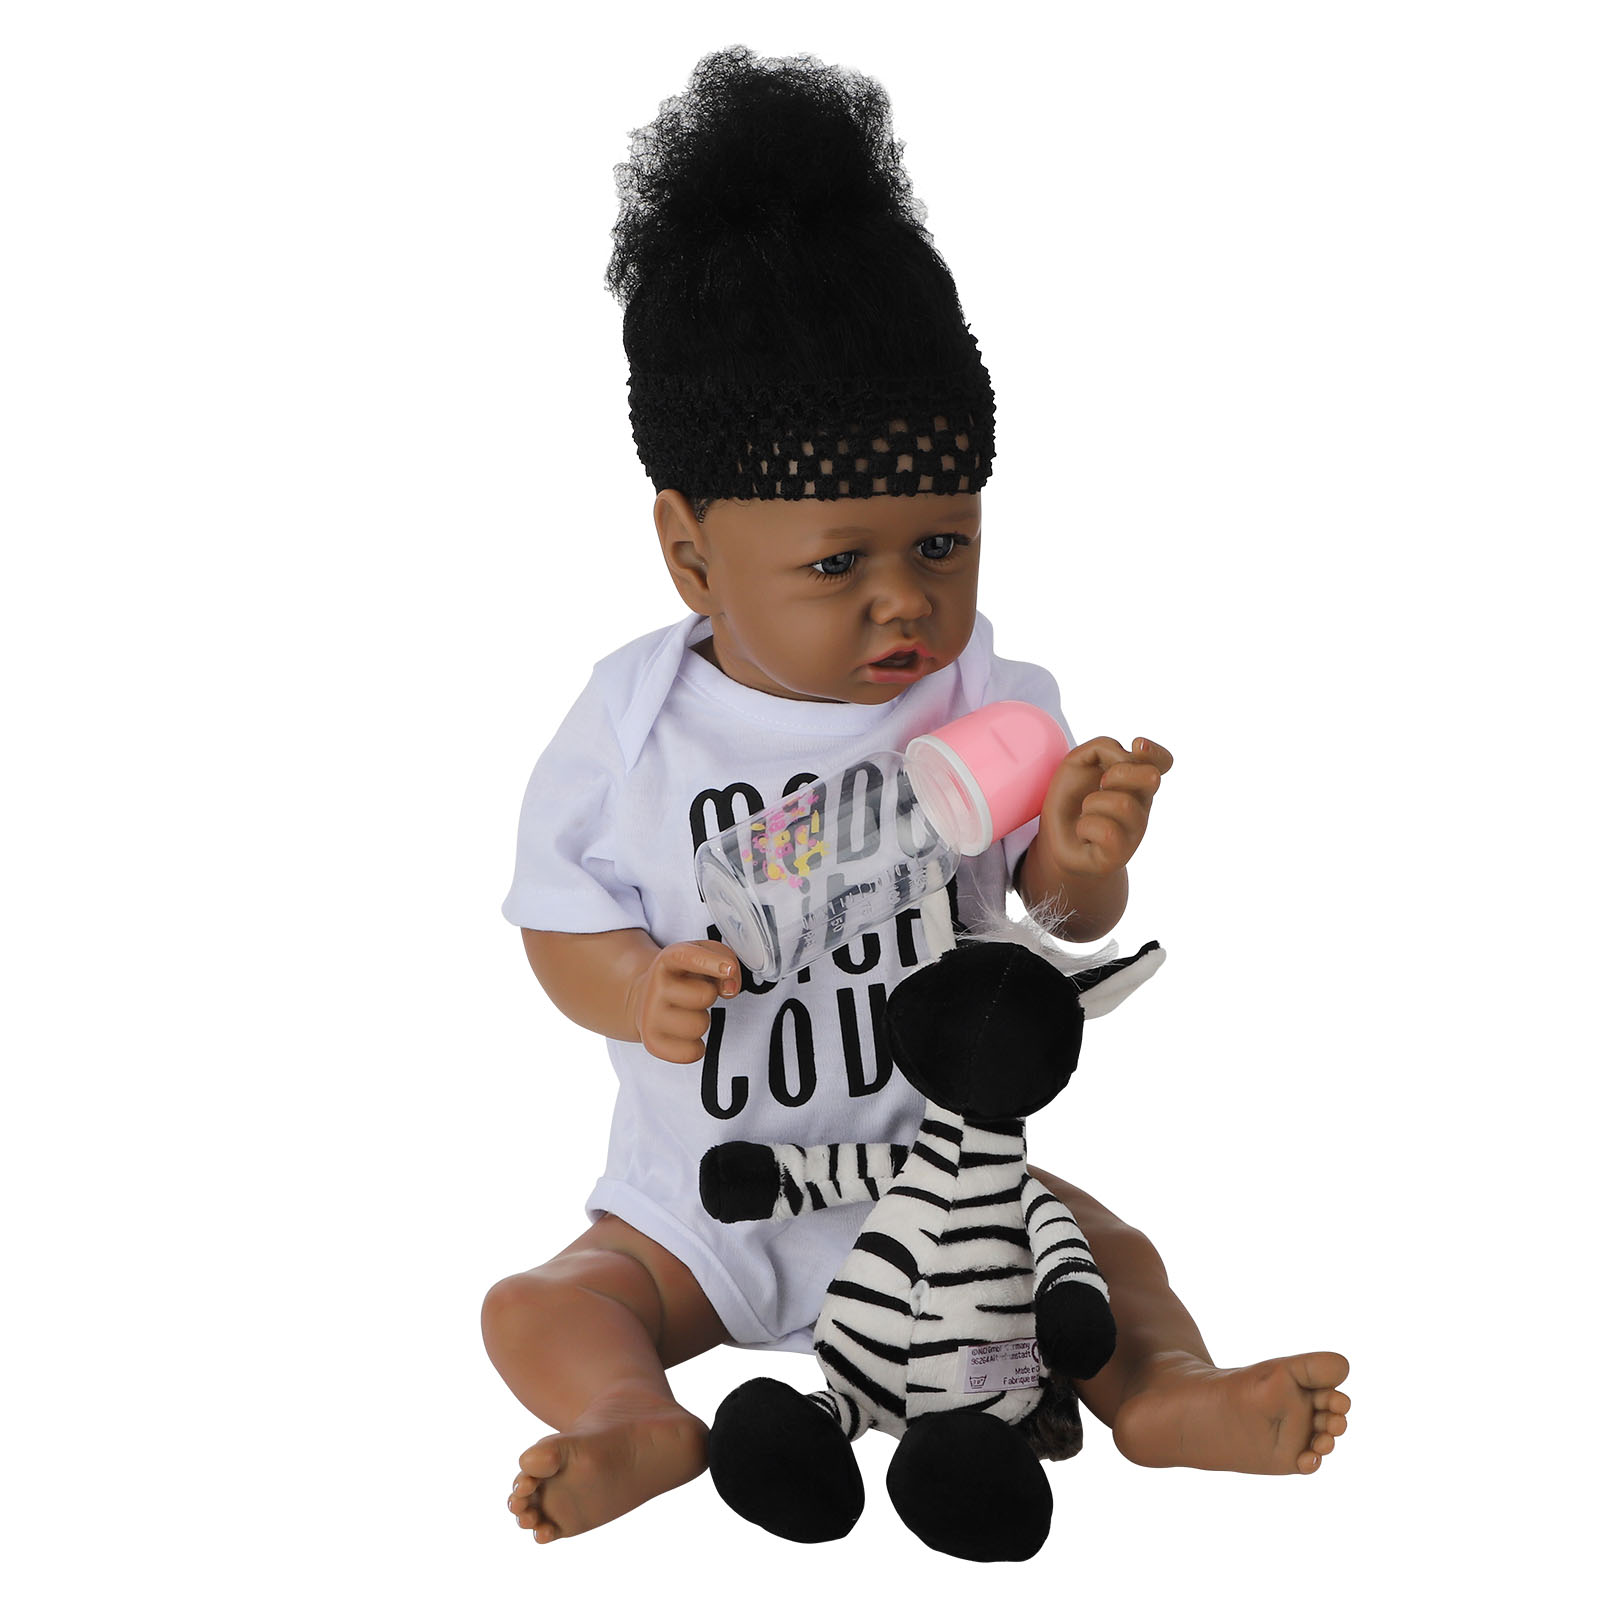 22inch Black Reborn Newborn Baby Dolls Full Body Silicone